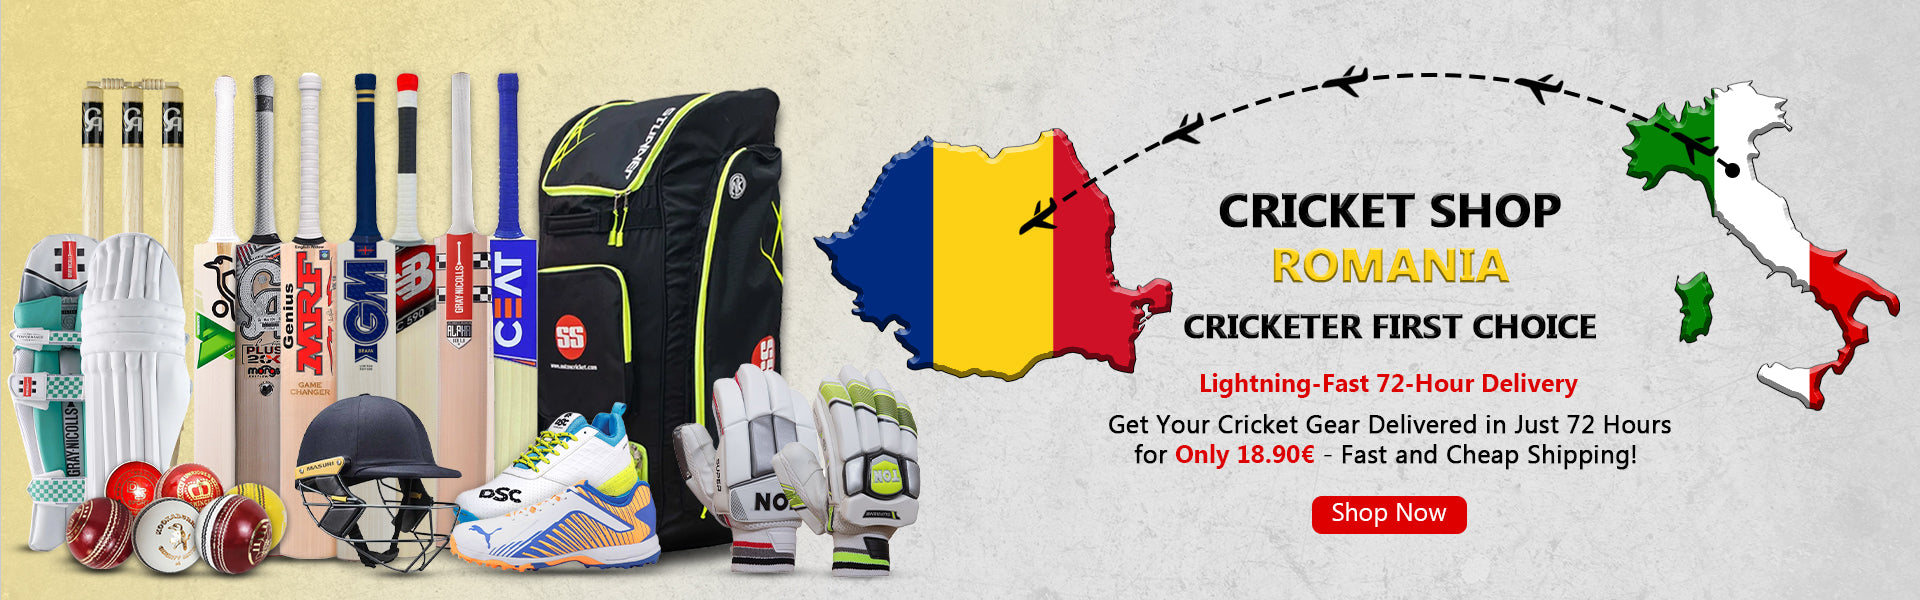 Cricket Shop Romania | Cricketer first Choice